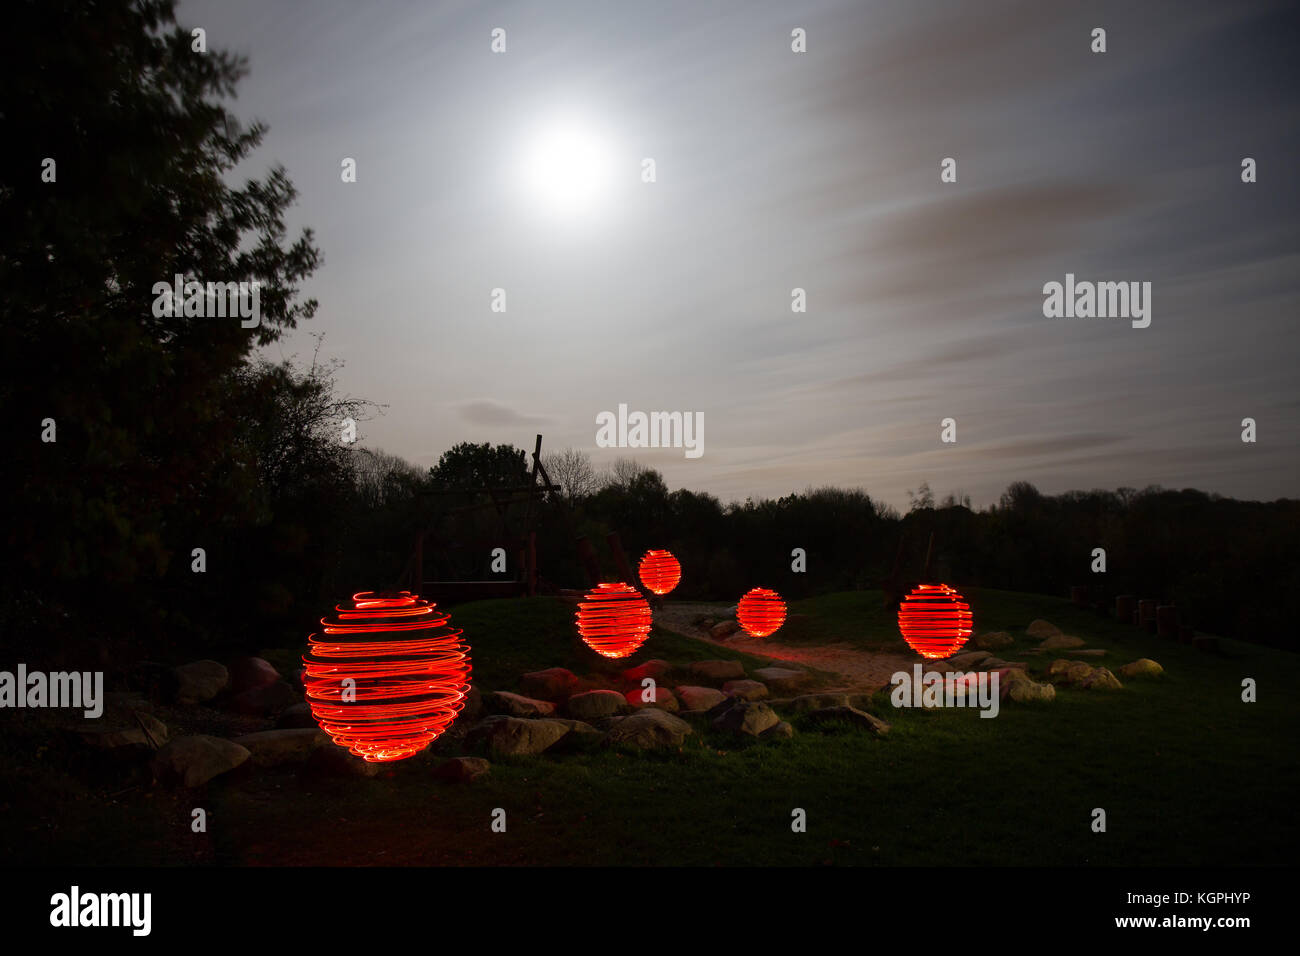 Extrañas, inexplicables, mágicas, esferas rojas de luz aparecen en un  paisaje, flotando sobre tierra oscura, bajo un cielo atmosférico iluminado  por la luna Fotografía de stock - Alamy